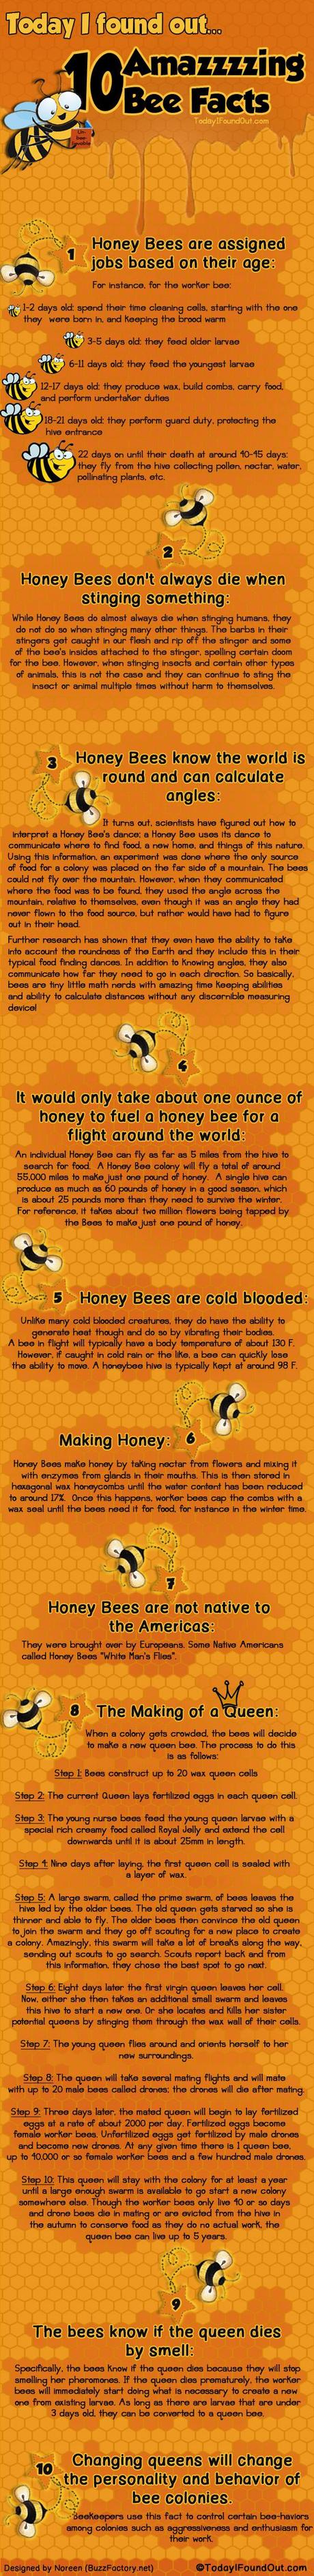 Cosa mi sapete dire a proposito delle api? [Infografica]